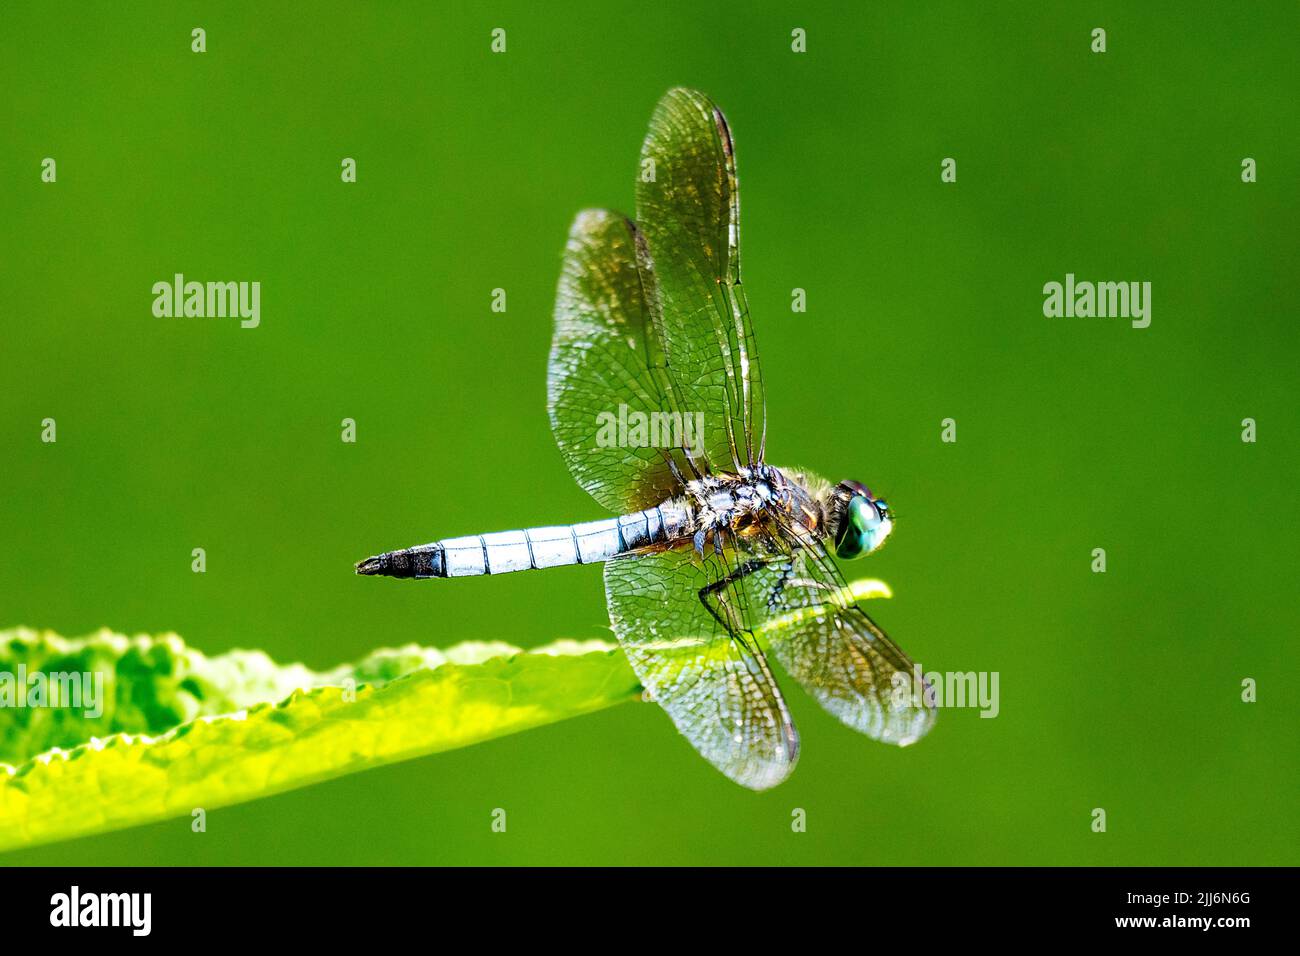 Une libellule dasher bleu mâle repose légèrement sur une feuille. Vue latérale. Banque D'Images